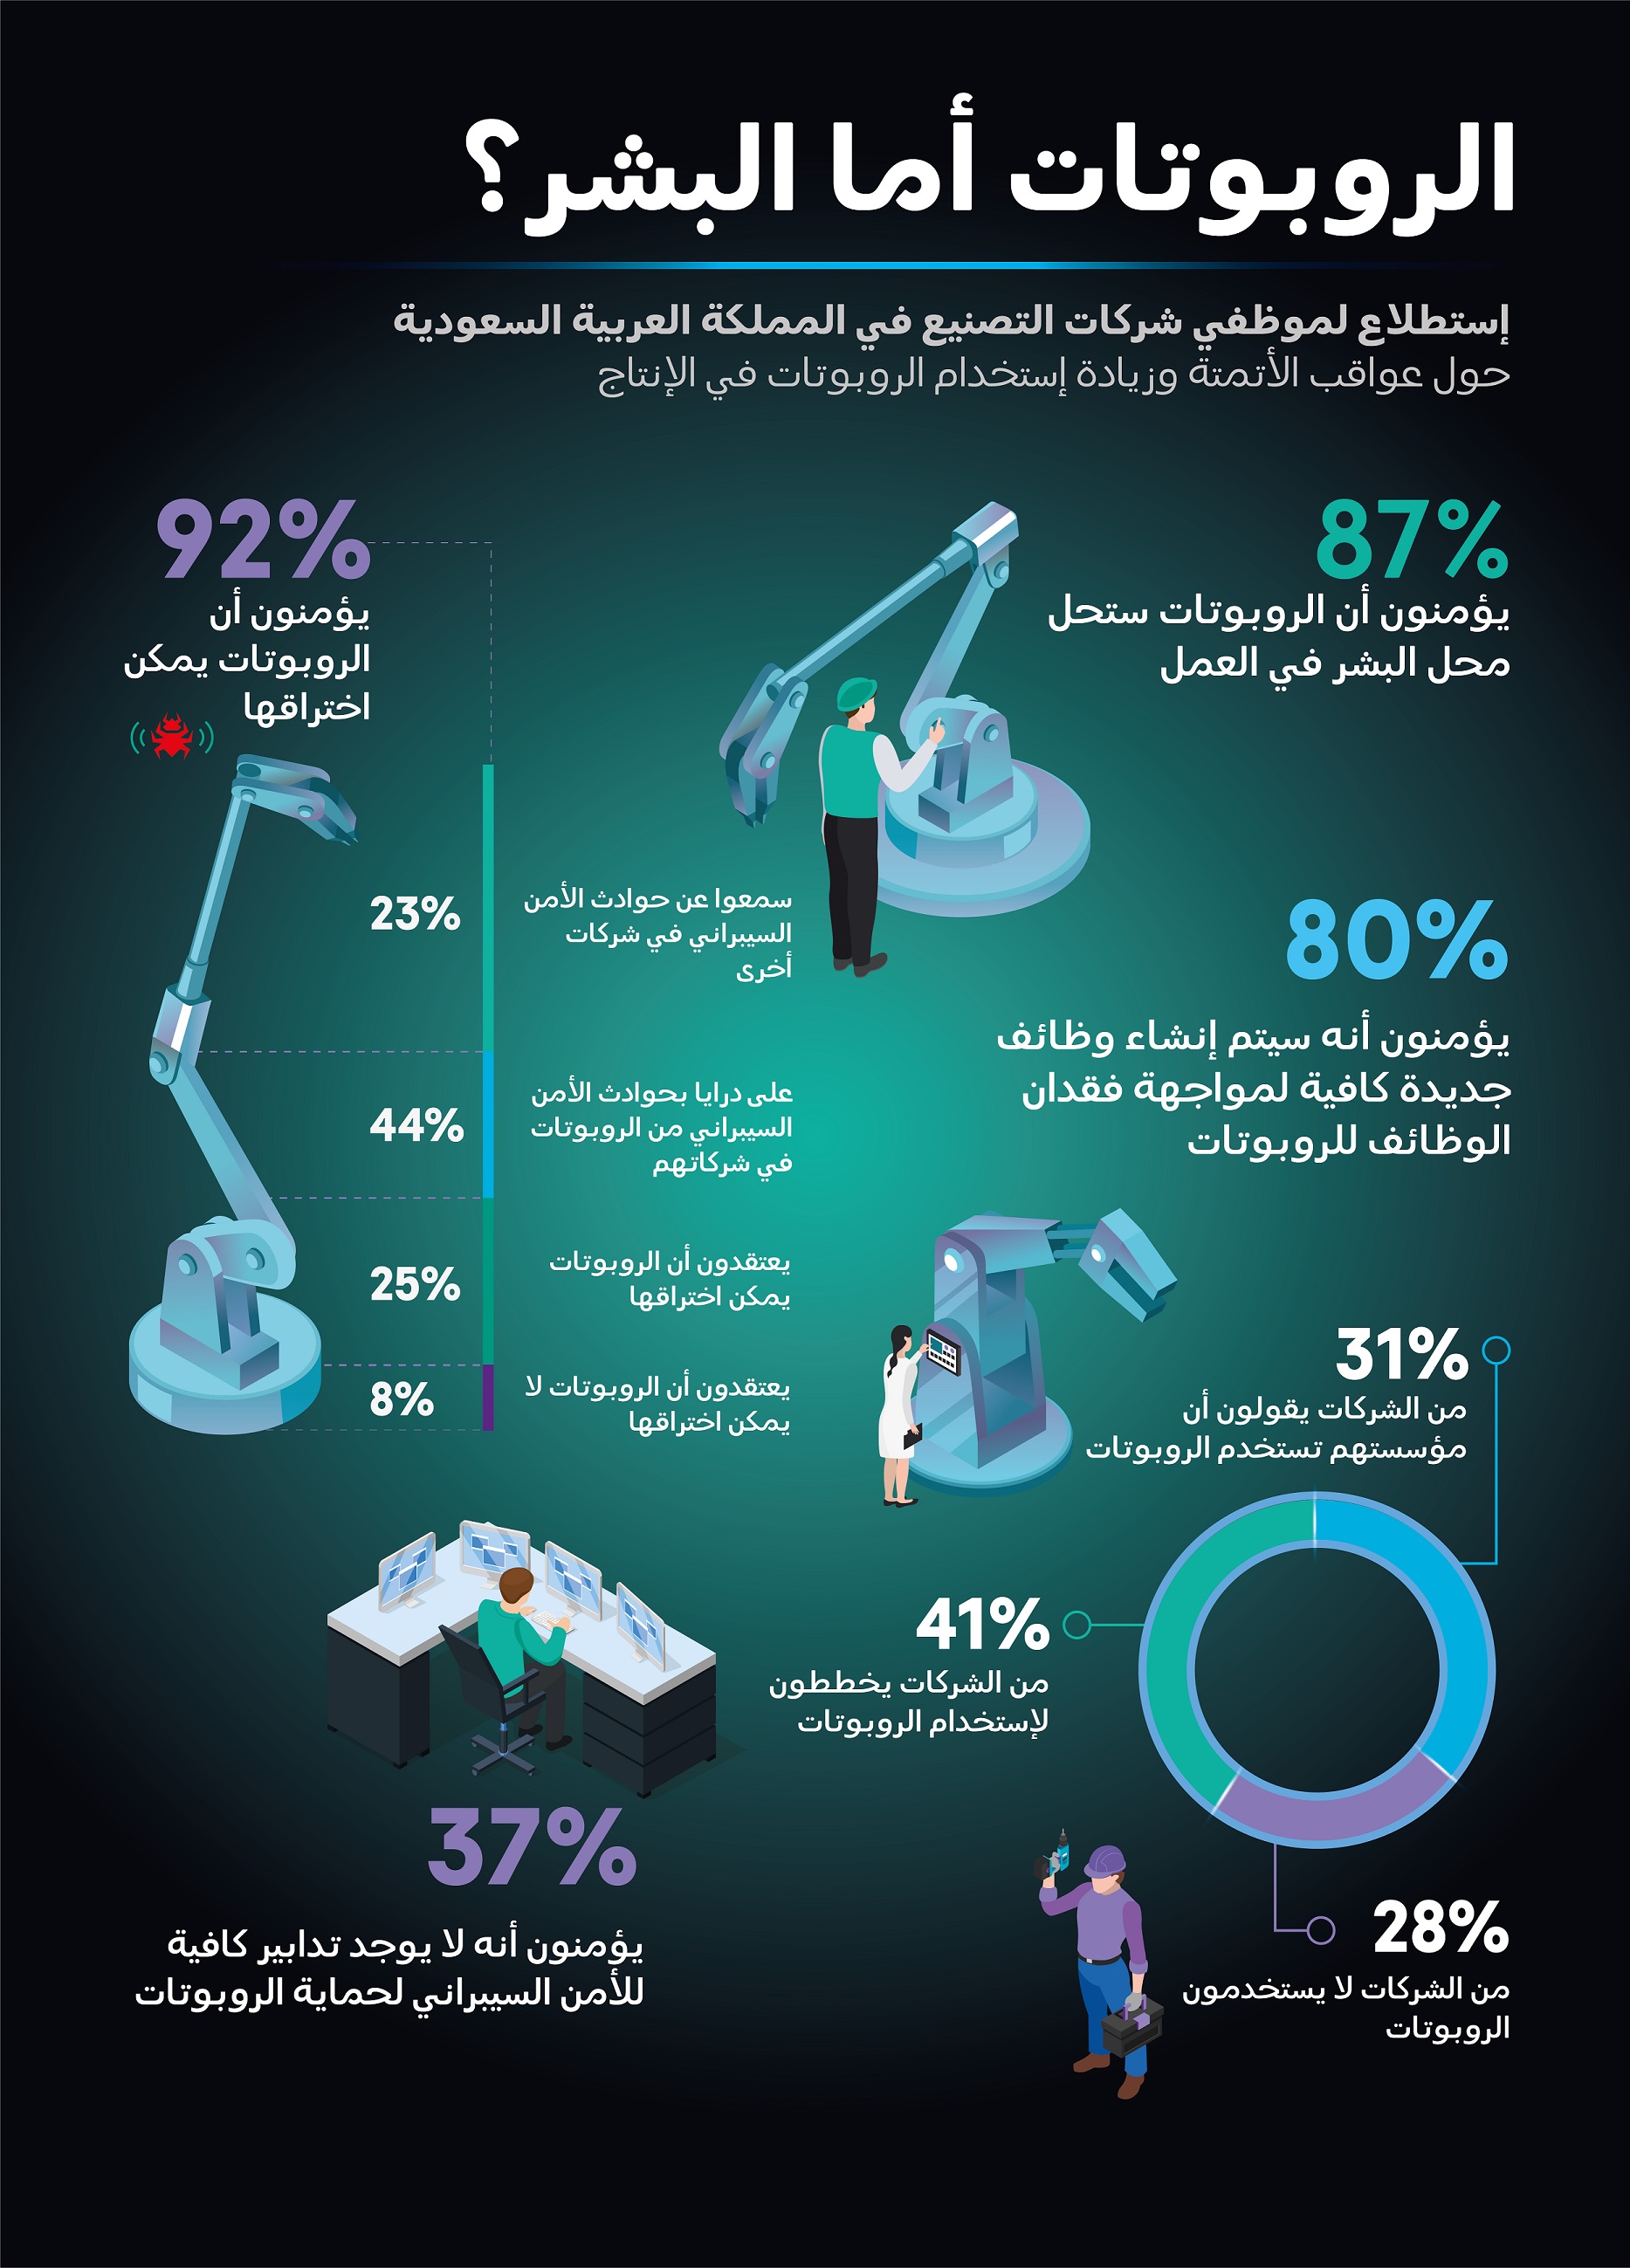 74% من الموظفين في السعودية يرون أنه يجب استخدام الروبوتات على نطاق أوسع في الإنتاج، لكنهم يخشون اختراقها